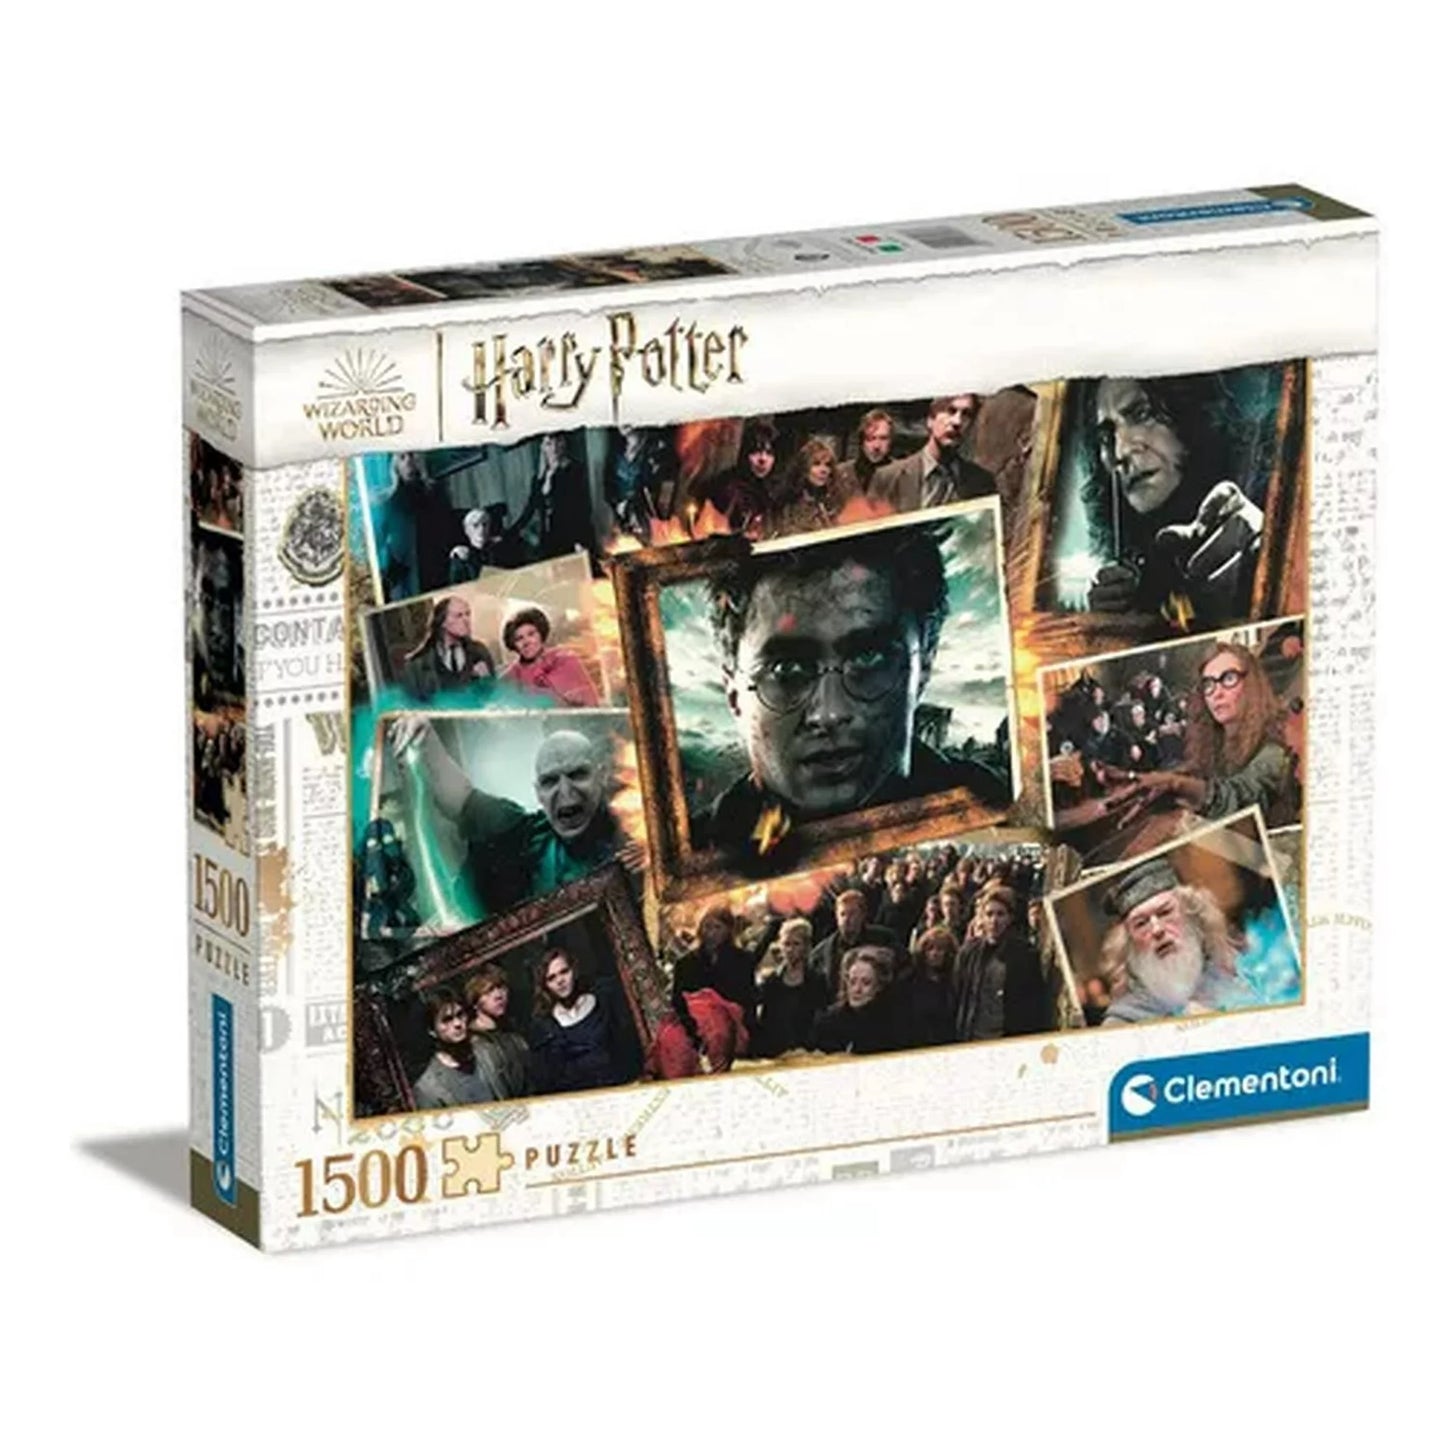 Clementoni 31697 Harry Potter 1500 Pieces